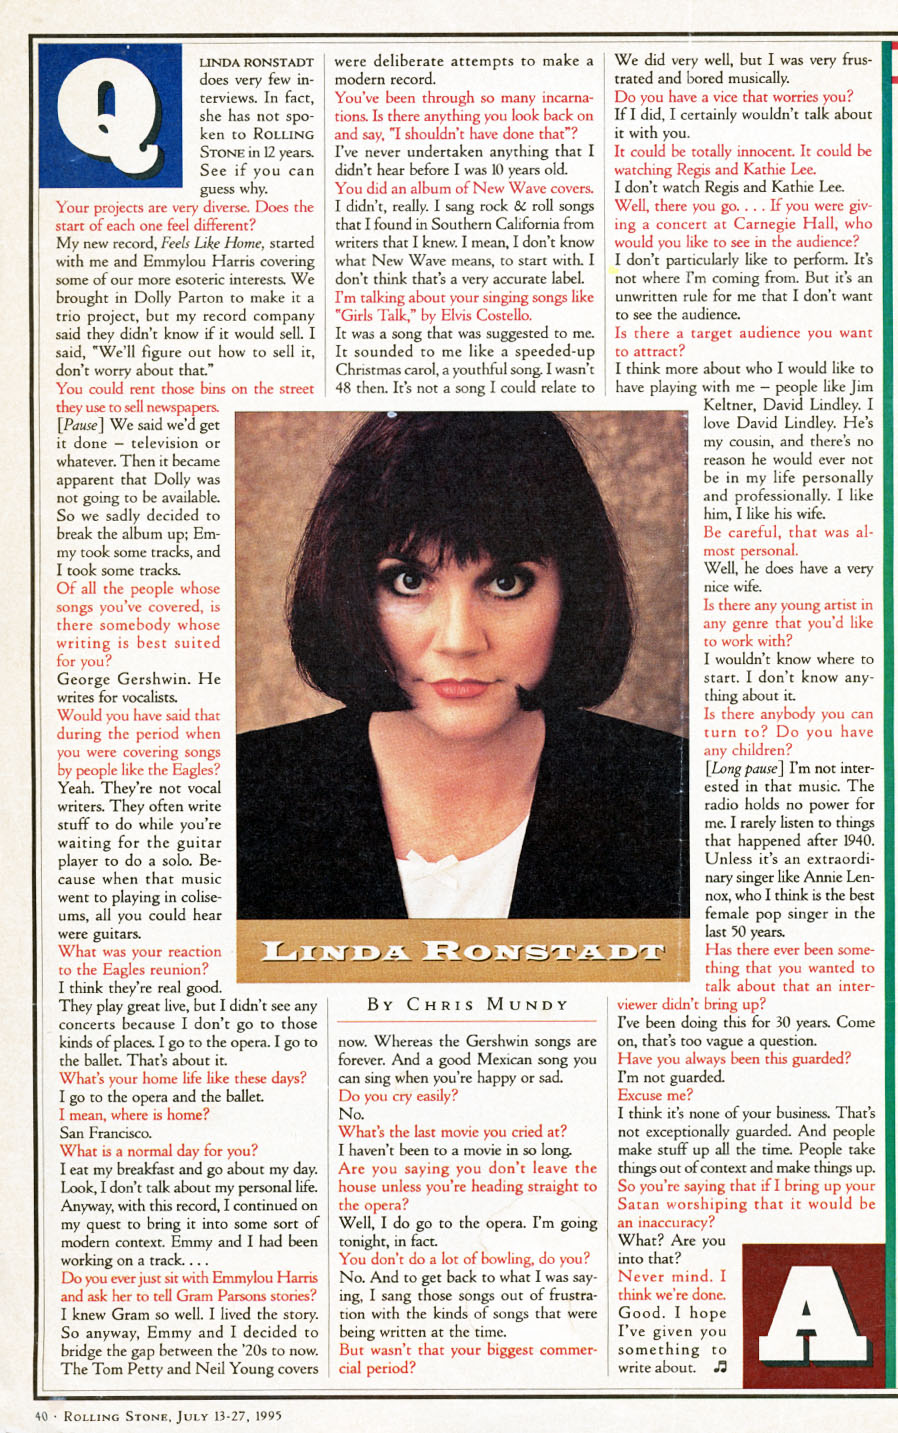 Linda Ronstadt Rolling Stone